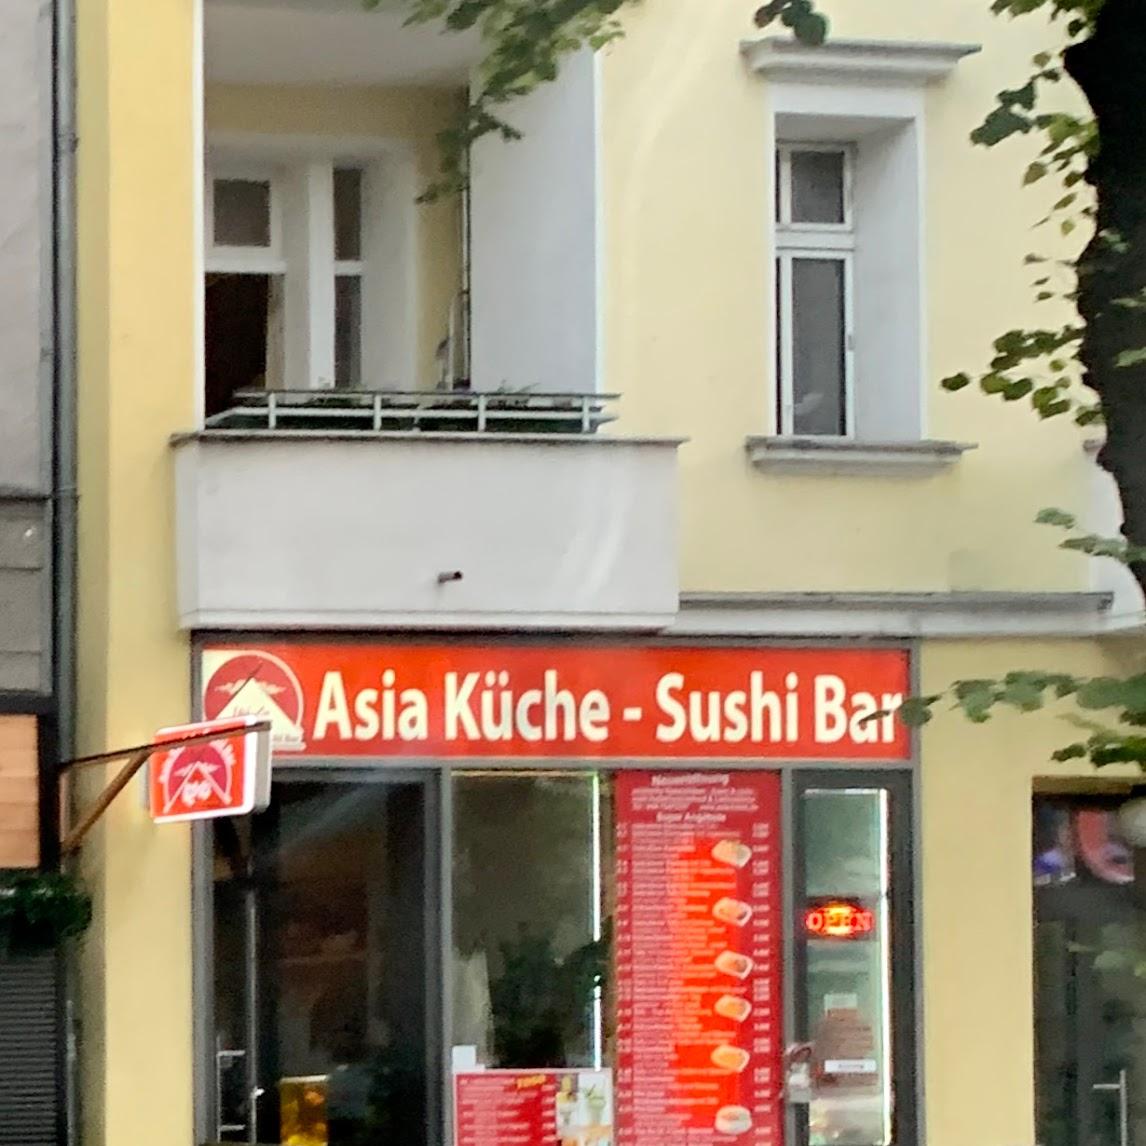 Restaurant "Hoi An Asia Küche Sushi Bar" in Berlin